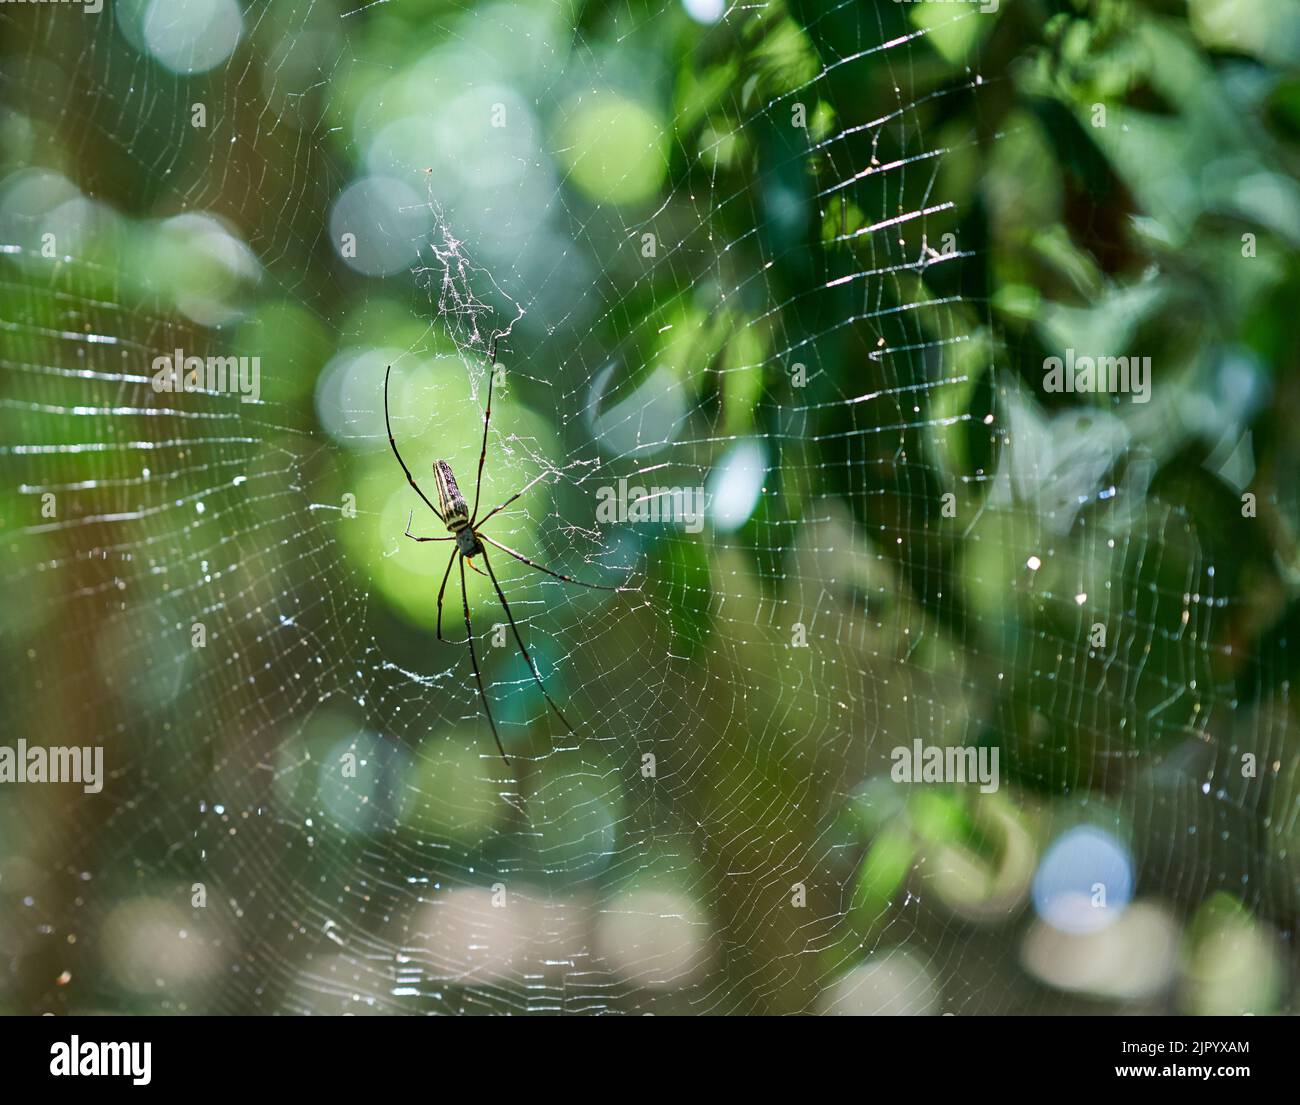 Eine große Spinne in einem Netz in einem grünen Wald, in Abendsonne. Stockfoto